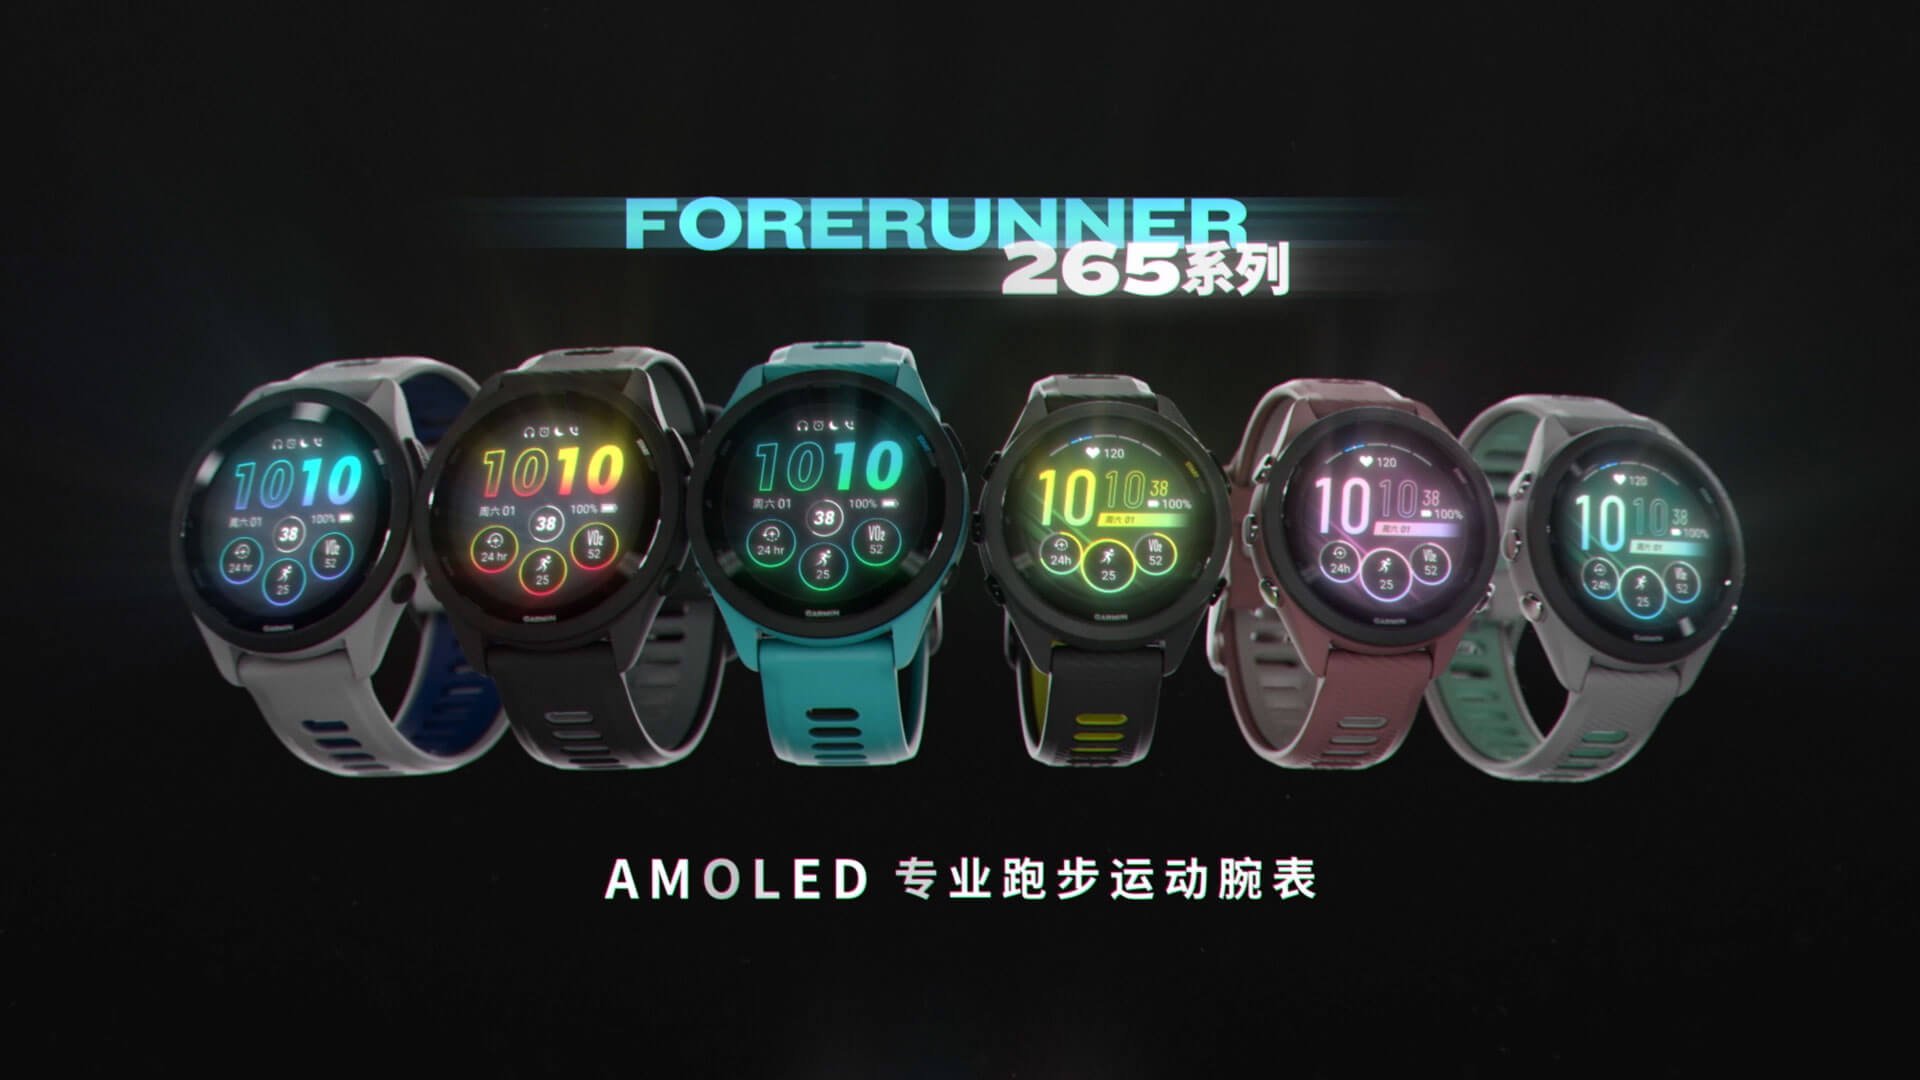 AMOLED专业跑步运动手表 - Forerunner 265S